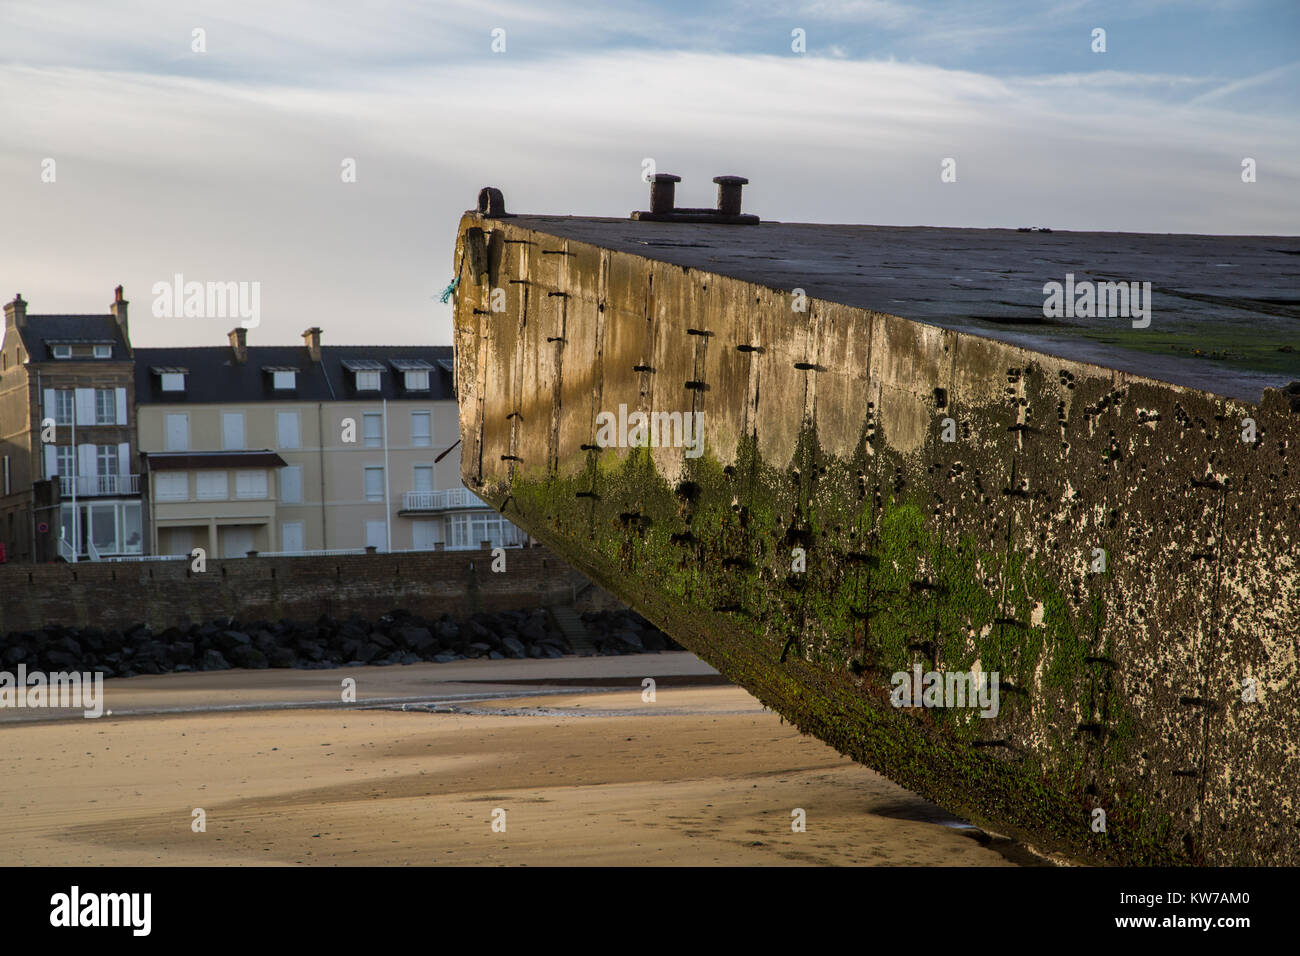 Restes d'une extension de la plate-forme du port Mulberry installé en juin 1944 dans le cadre du débarquement allié en Normandie. Il est situé sur la plage à l'Arr Banque D'Images